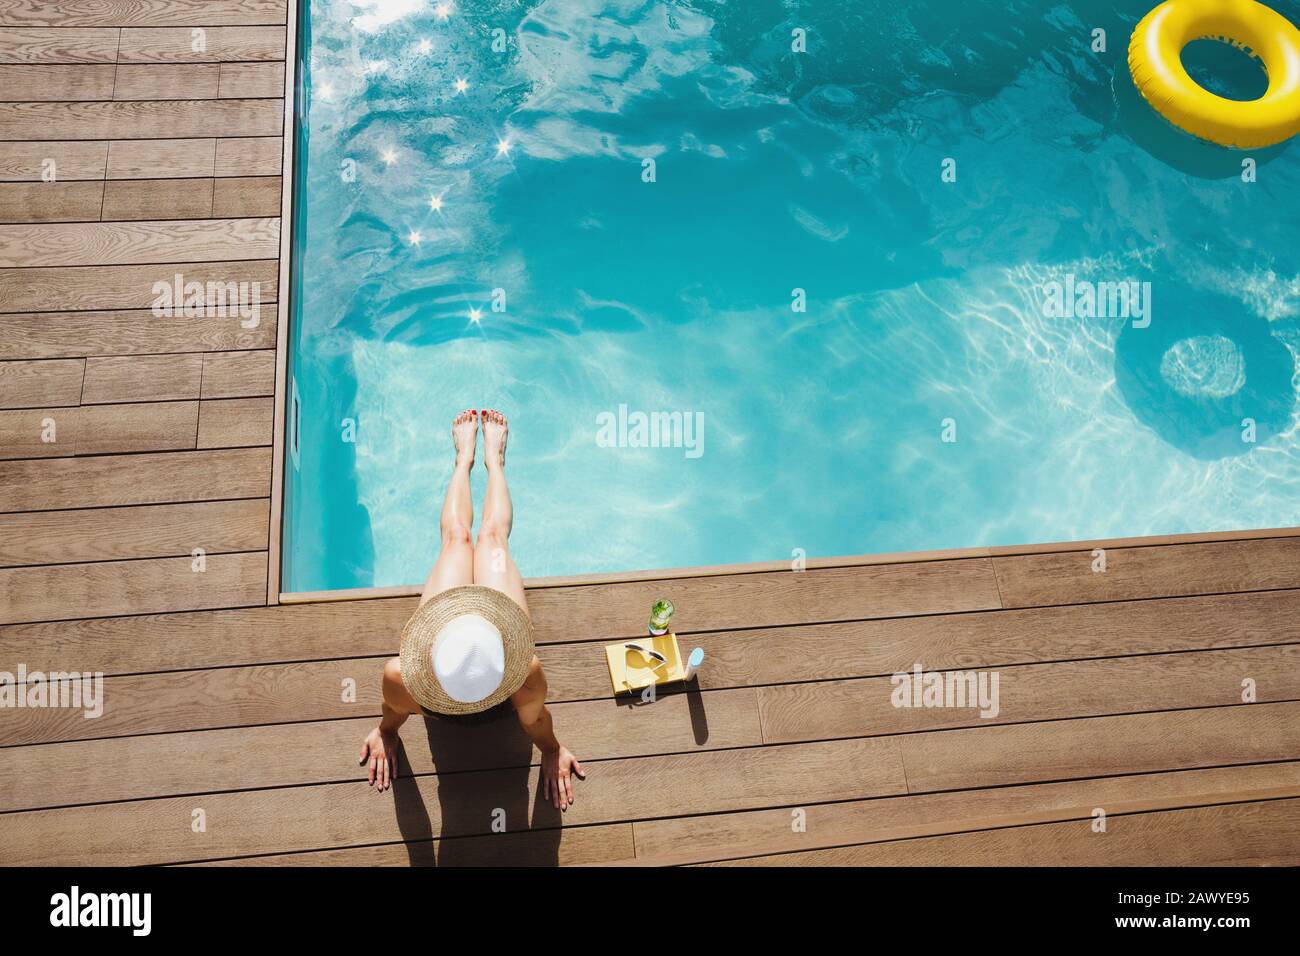 Femme dans un chapeau de soleil se détendre, bronzer au soleil en été au bord de la piscine Banque D'Images